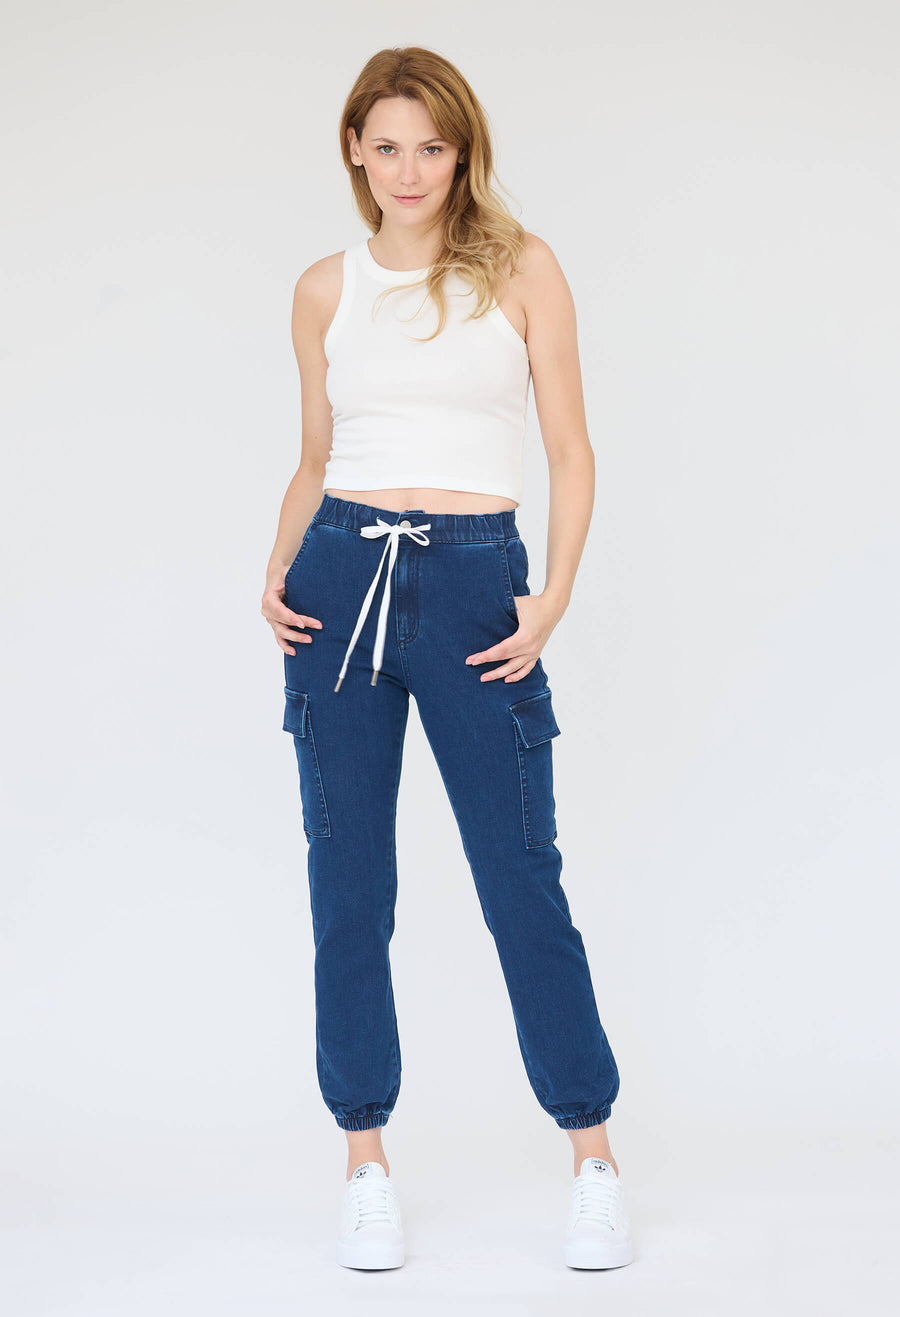 Jeans capri Malia avec poches, collaboration YOGA-JEANS et KSL, de couleur marine!